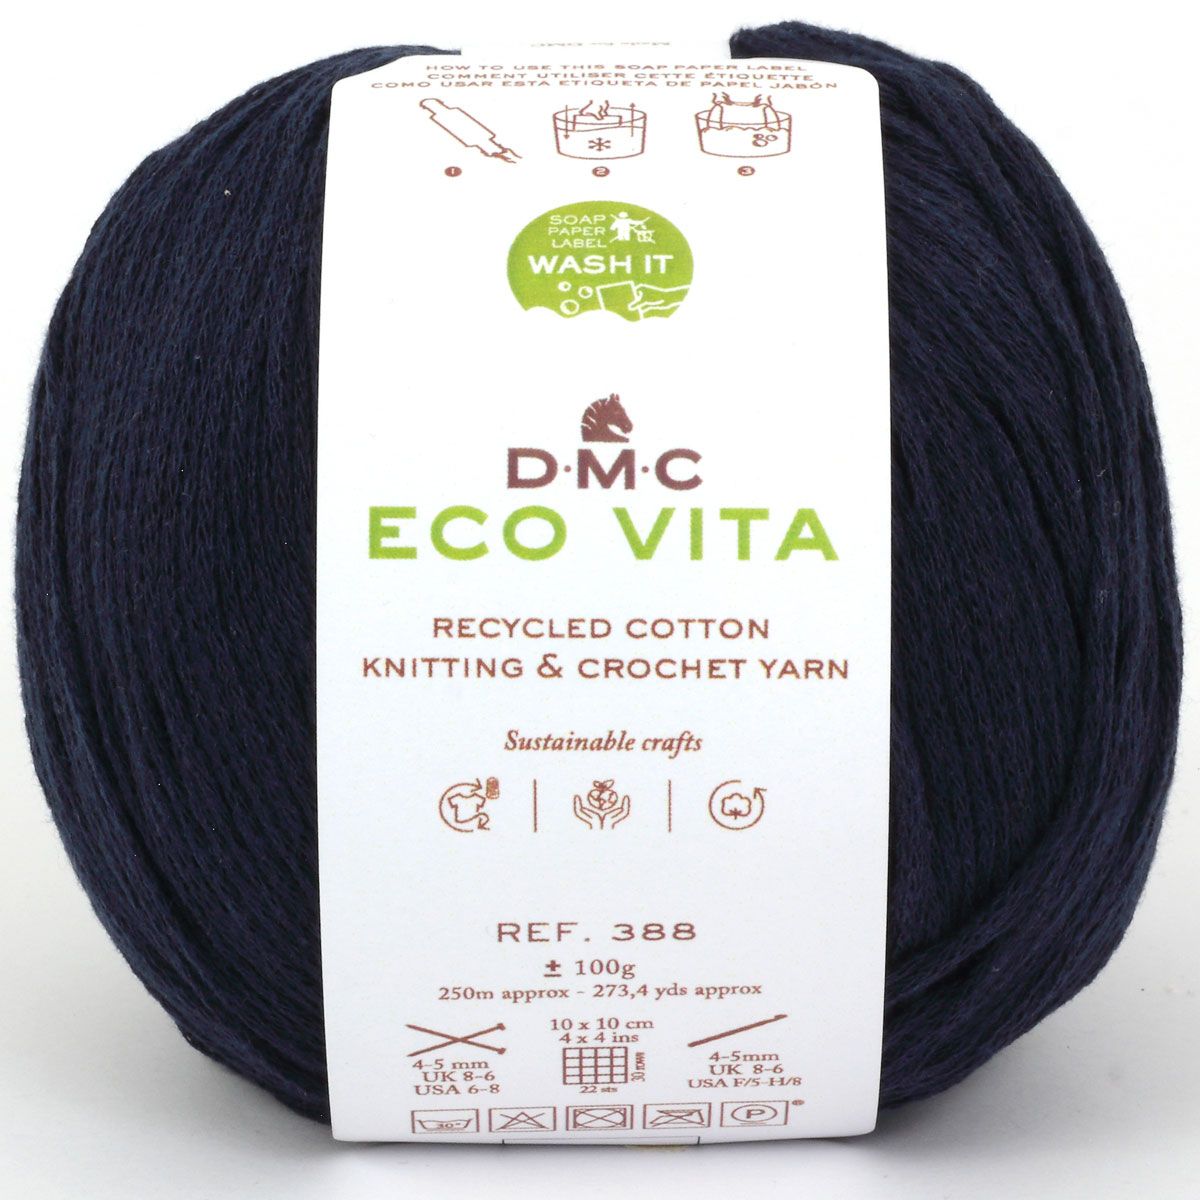 DMC Eco Vita Hilo de Algodón Reciclado. Amplia Variedad de Colores Inspirados en la Naturaleza